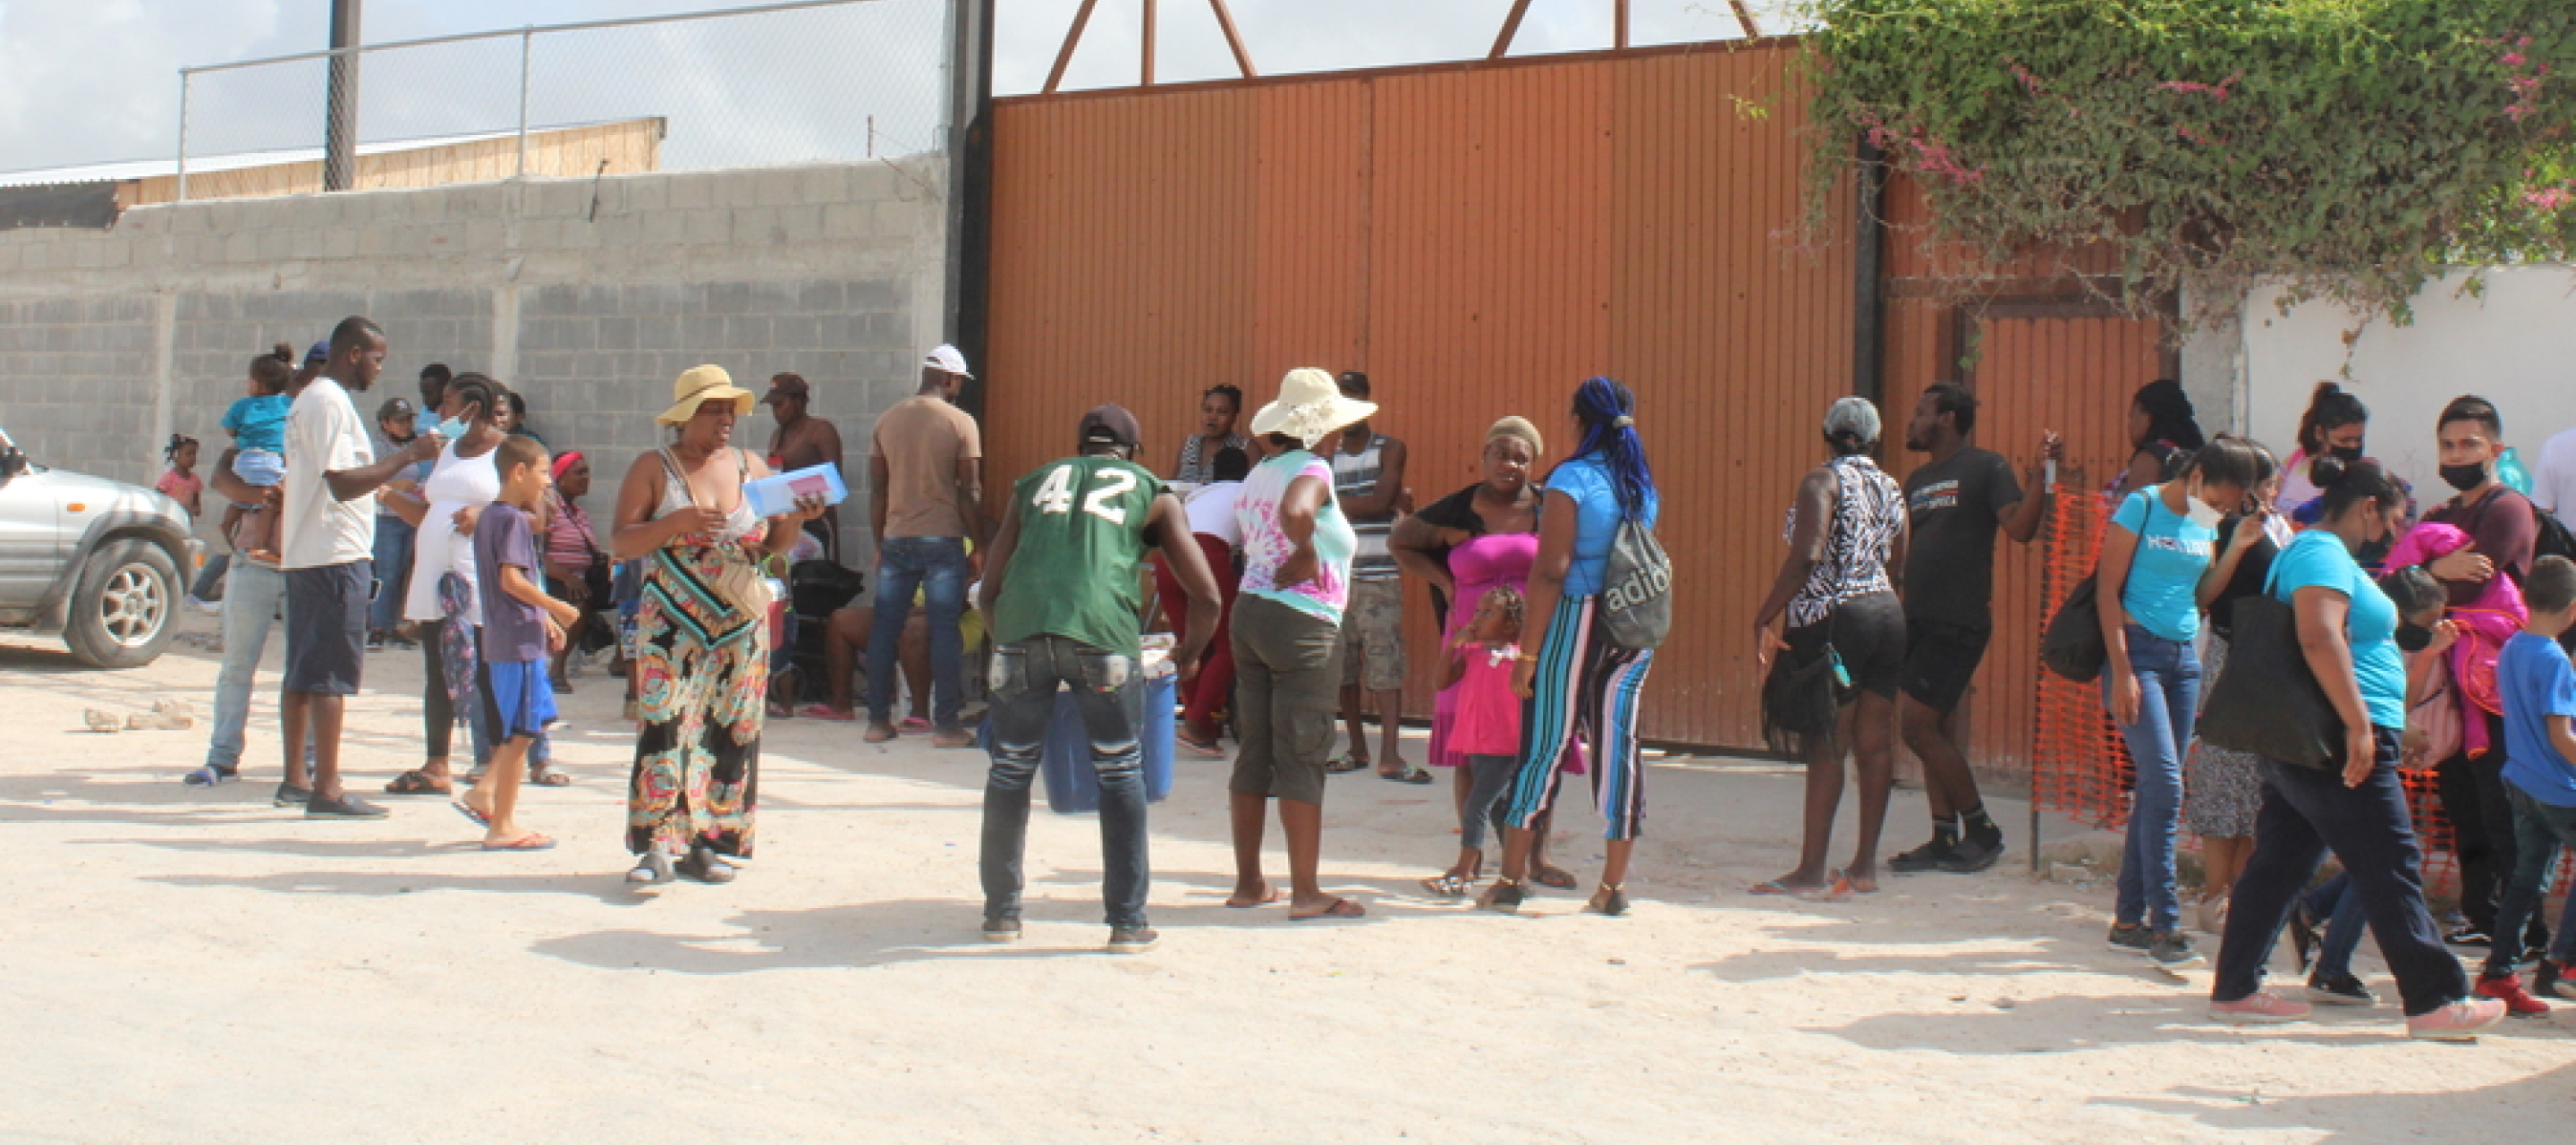 Menschen, die ihre Heimat in Mexiko verlassen mussten, leben nun auf der Straße oder in überfüllten Unterkünften